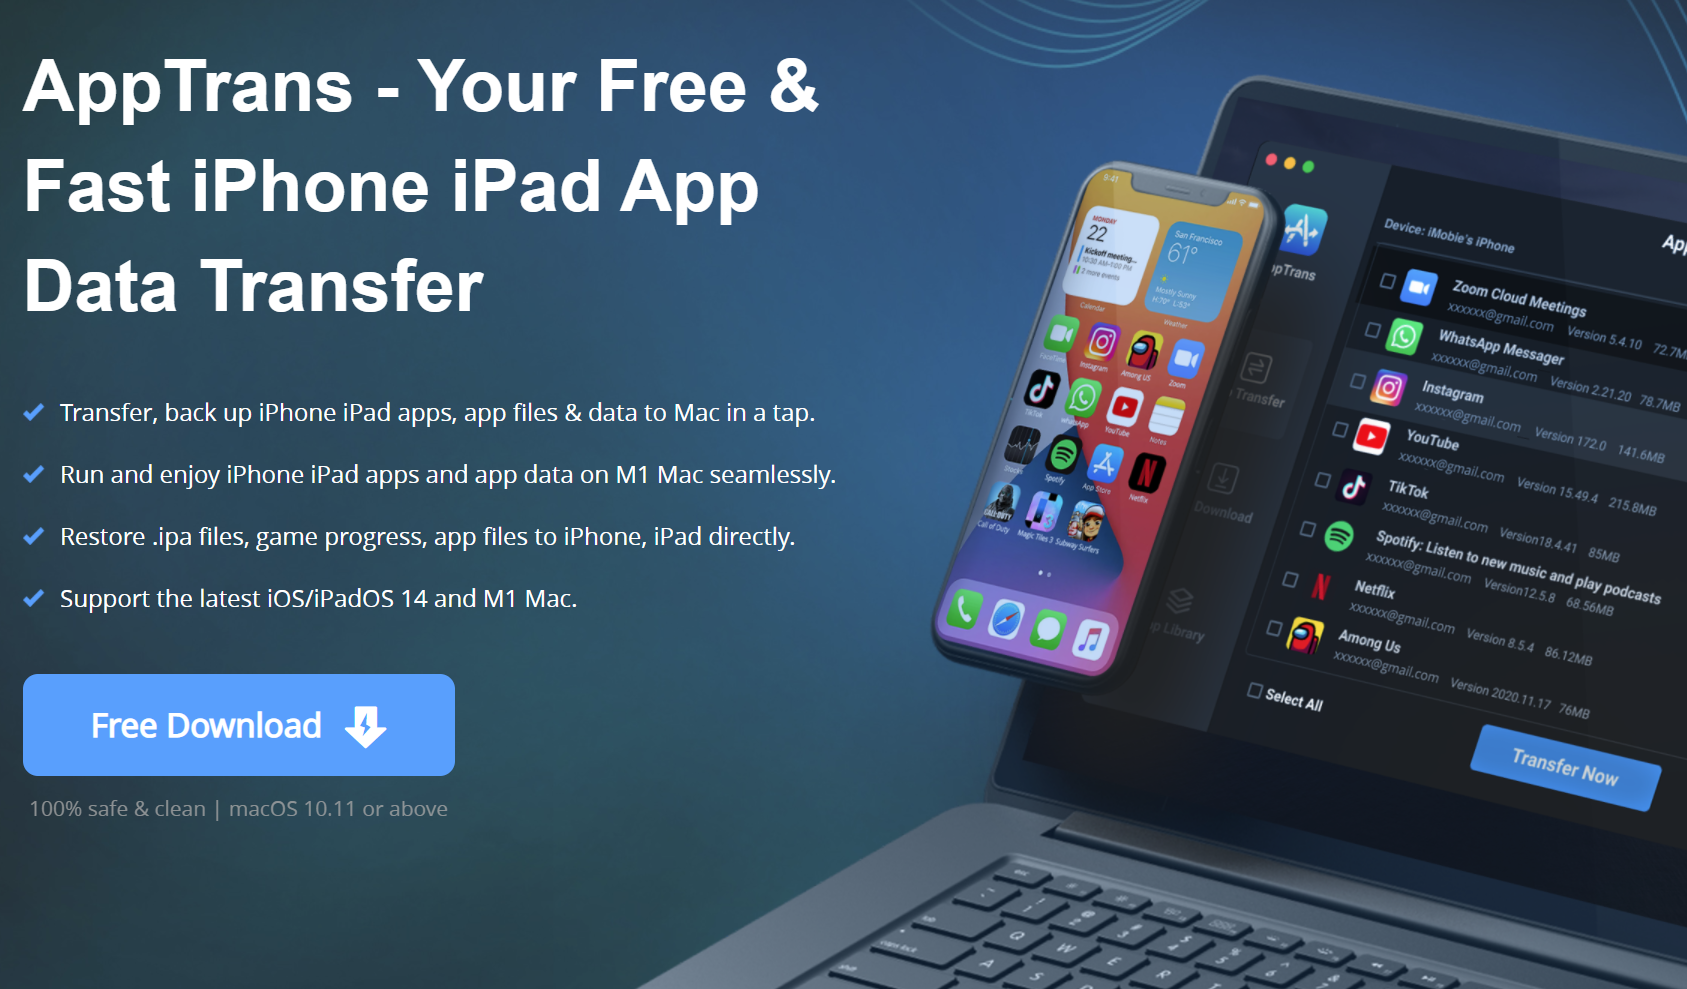 免費軟體 AppTrans 可以讓 iOS App 與資料直接在 M1 Mac 執行！ @3C 達人廖阿輝